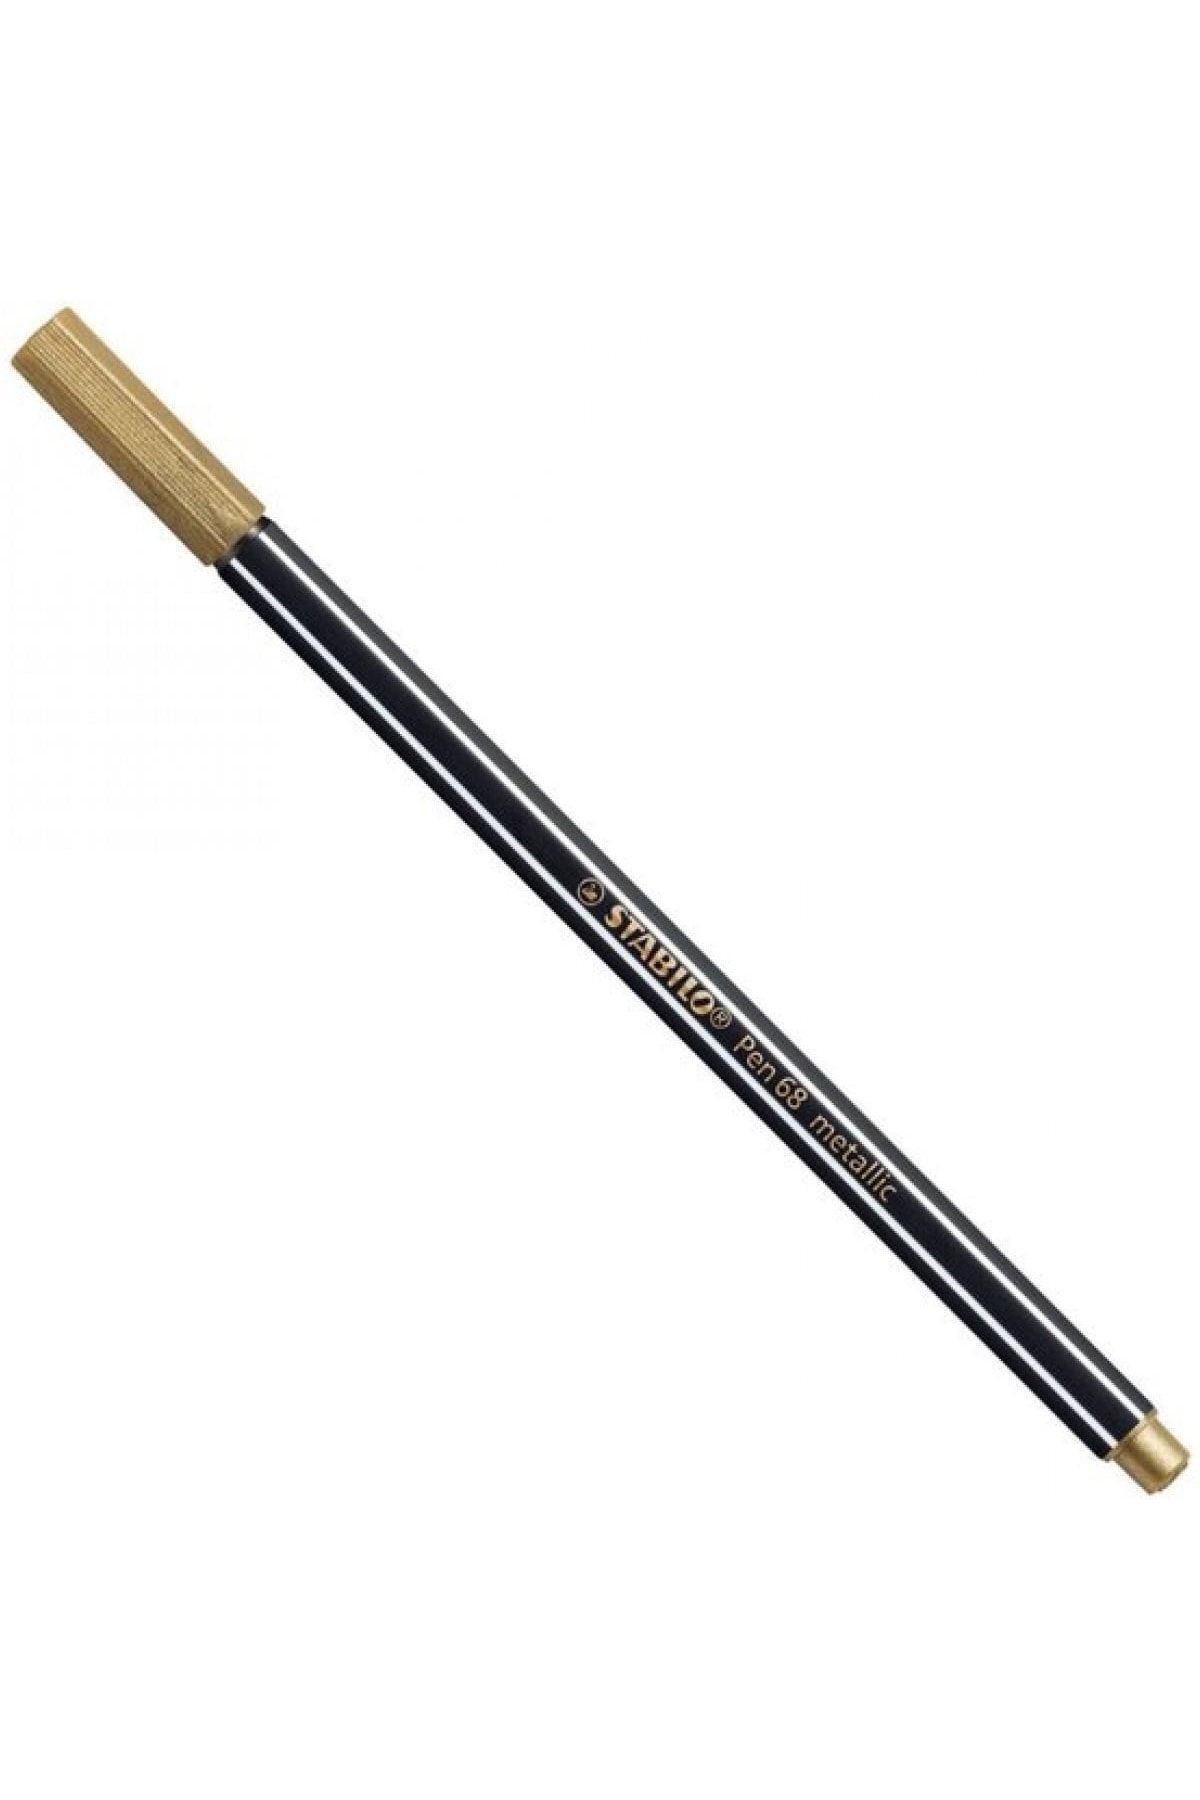 Stabilo Pen 68 Keçe Uçlu Boya Kalemi Metalik Altın 68/810 (10 Lu Paket)